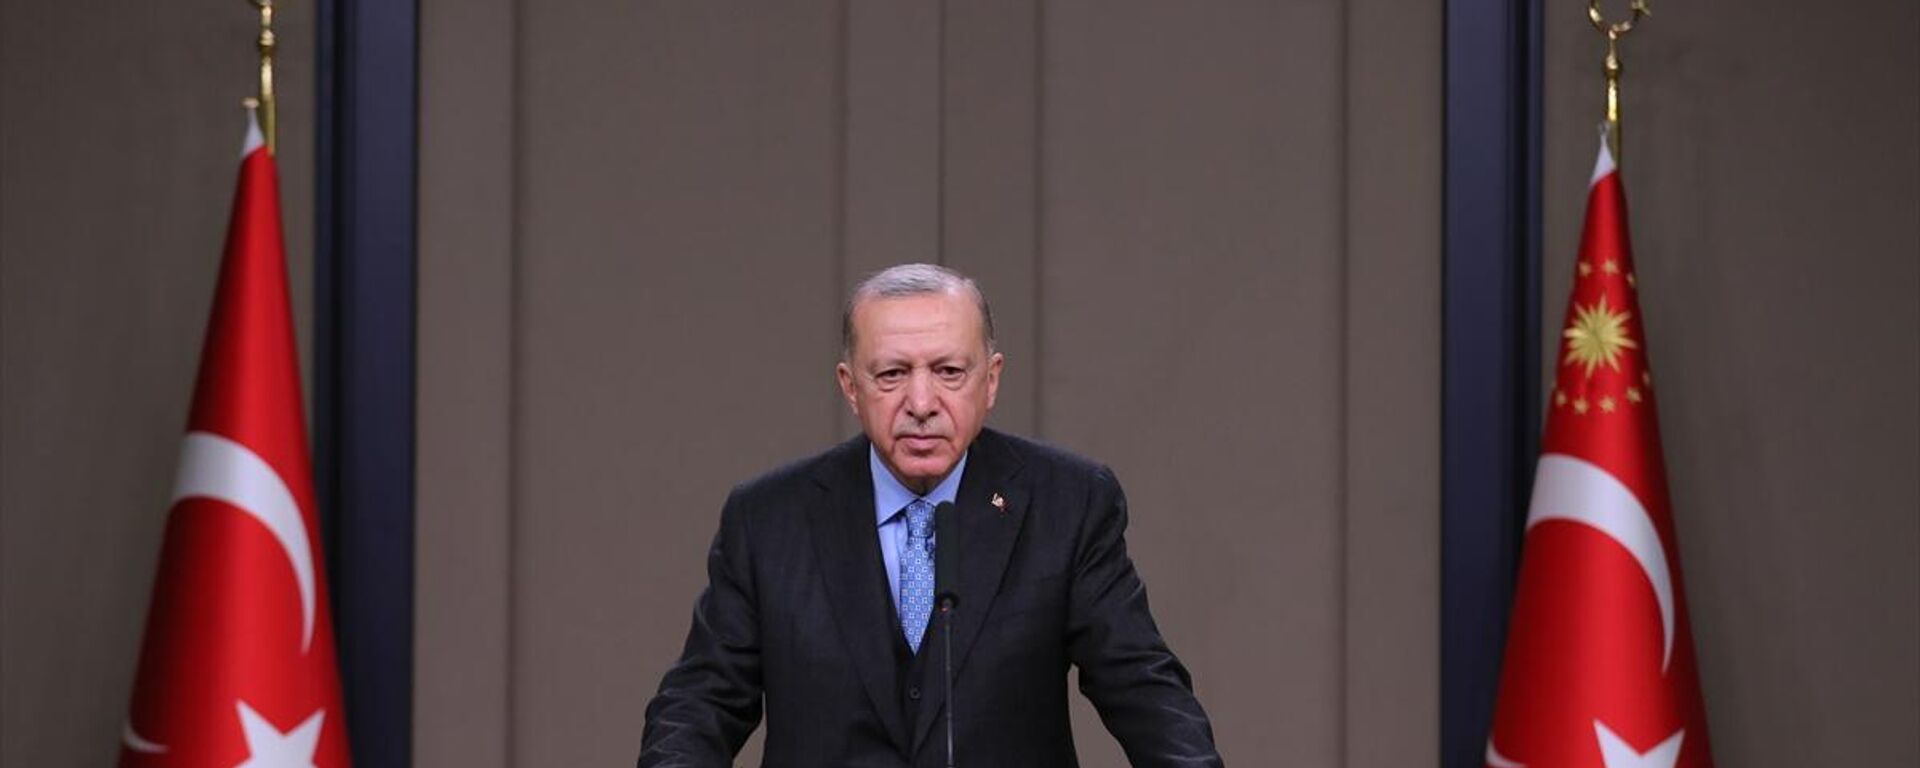 Cumhurbaşkanı Recep Tayyip Erdoğan, Ukrayna ziyareti öncesinde basın toplantısı düzenledi. - Sputnik Türkiye, 1920, 05.02.2022